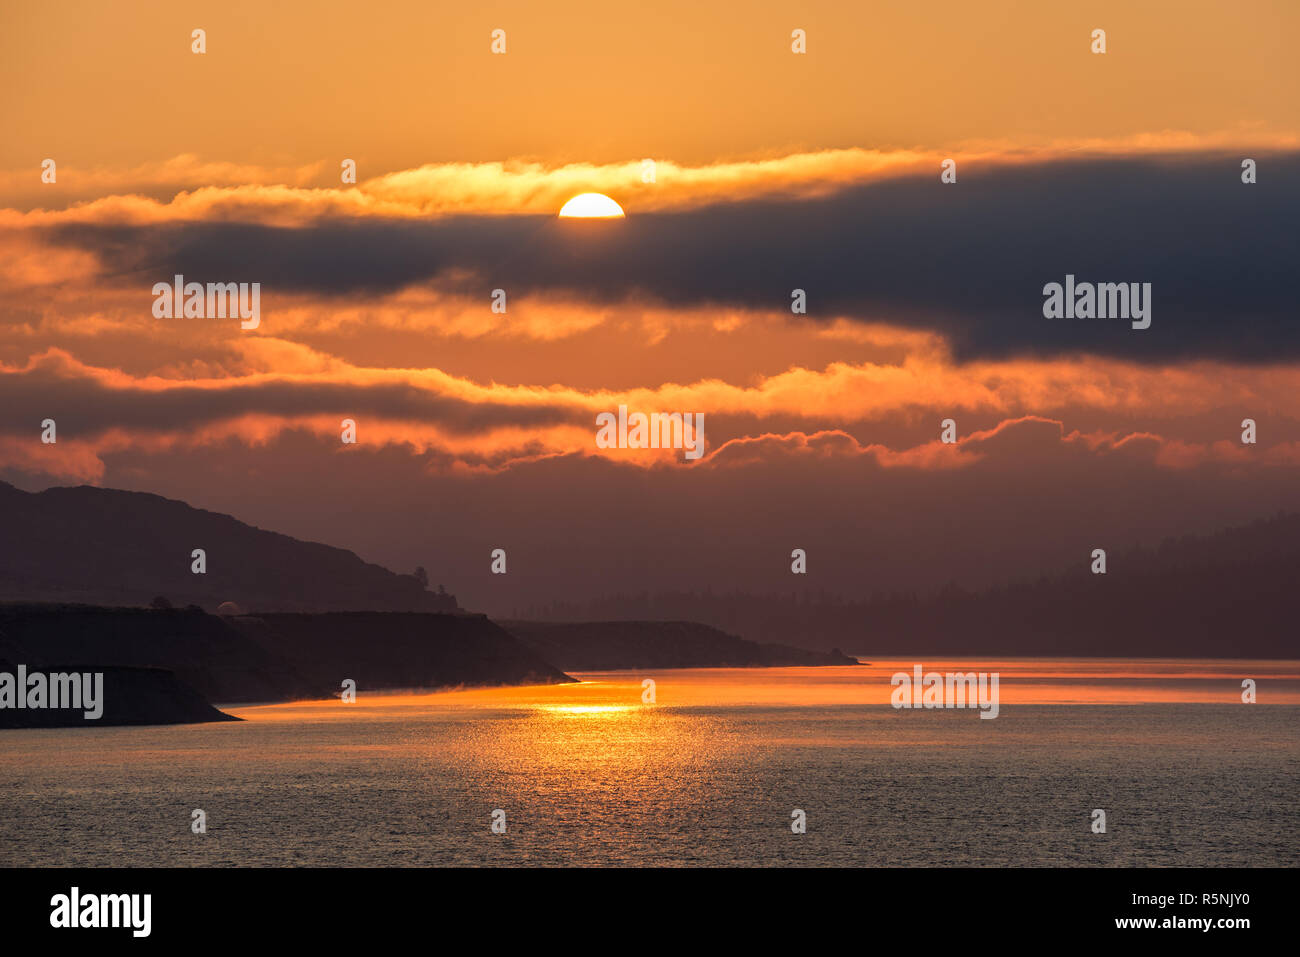 Sunrise over Franklin Roosevelt Lake, Washington. Stock Photo